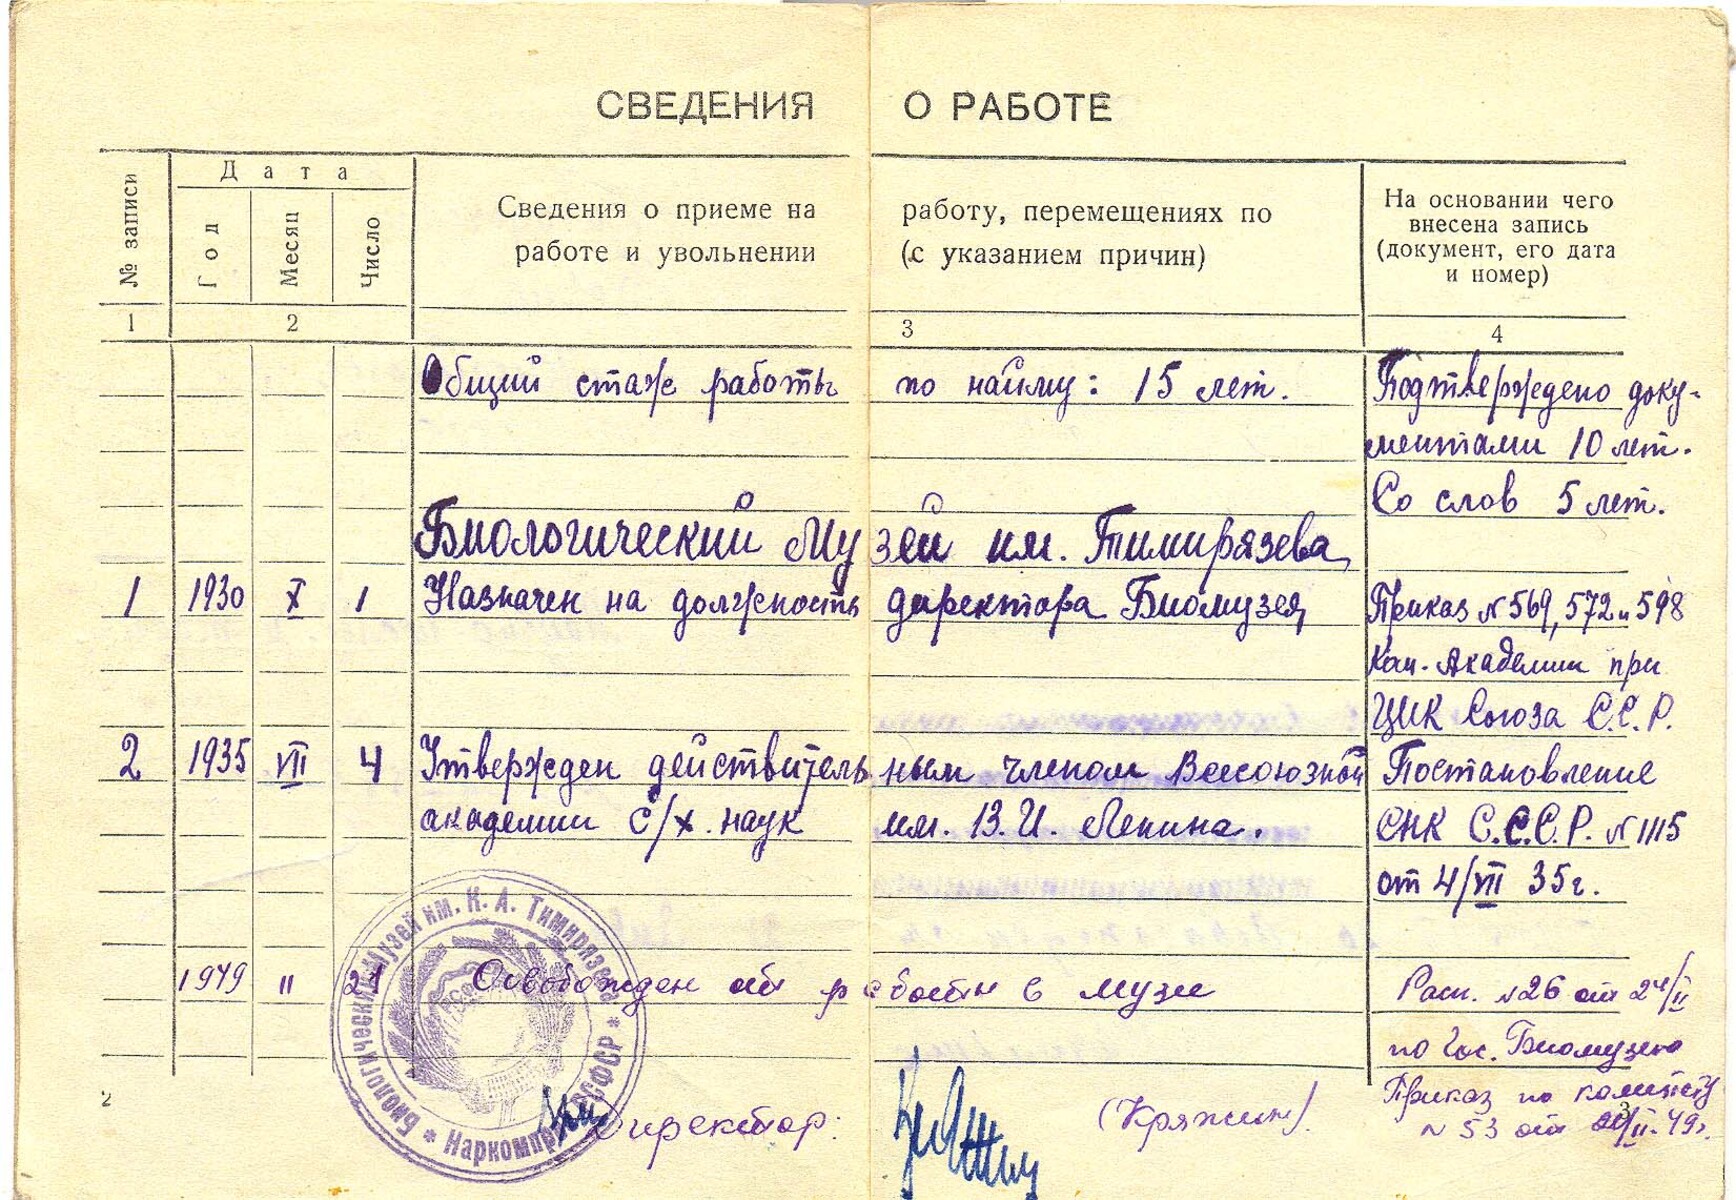 Трудовая книжка Б. М. Завадовского. Дата заполнения 21 января 1939 г. (ГБМТ ОФ-10282/3)